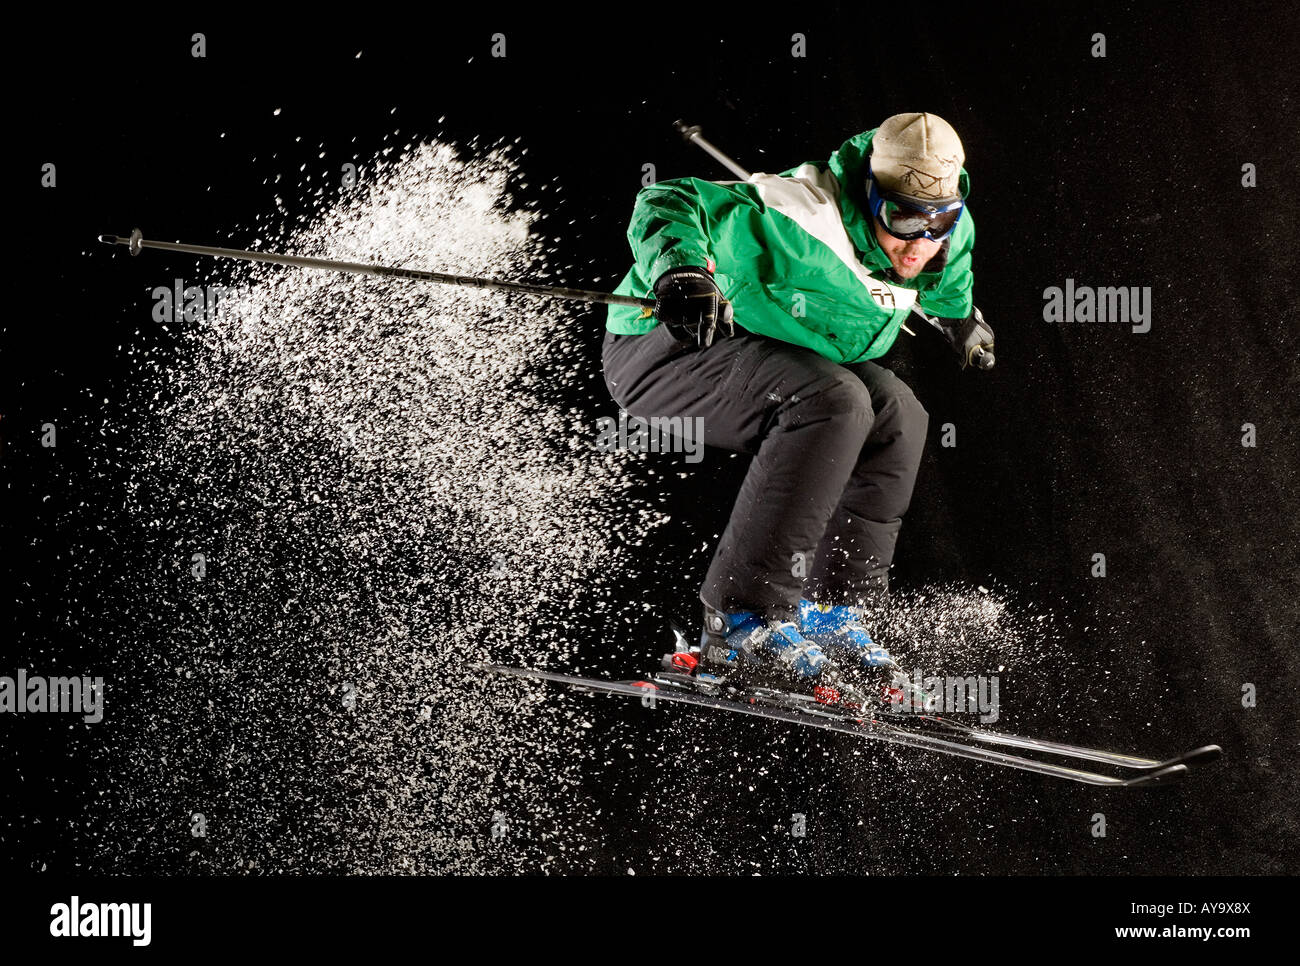 La vitesse et l'équilibre, skieur dans gaine verte Banque D'Images